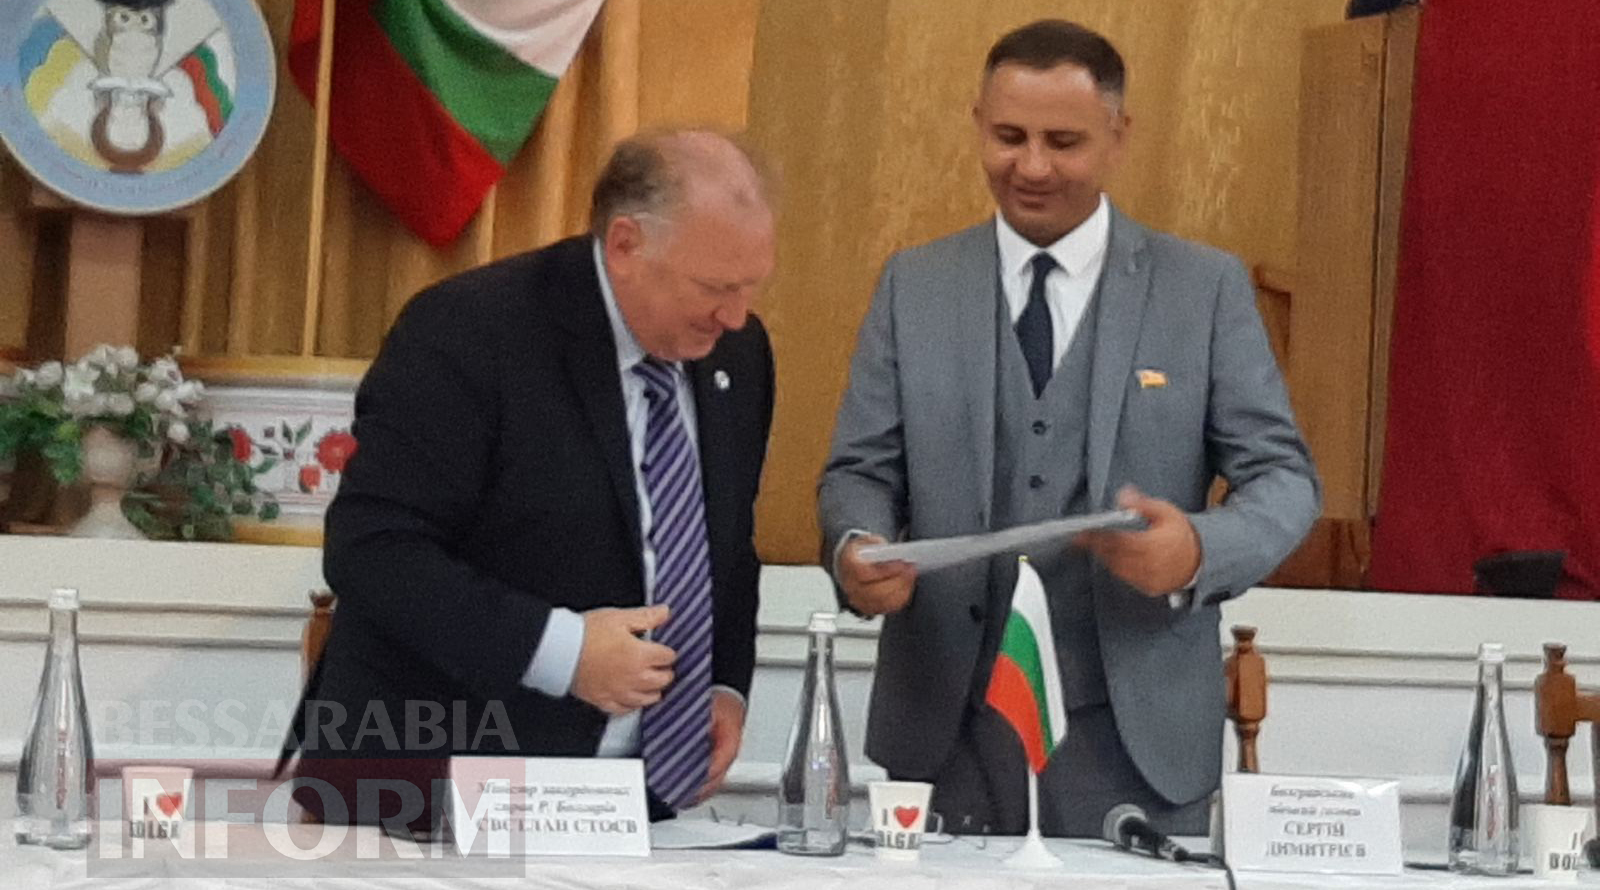 На празднование 200-летия Болграда прибыла делегация из Болгарии: обсуждали развитие двусторонних отношений